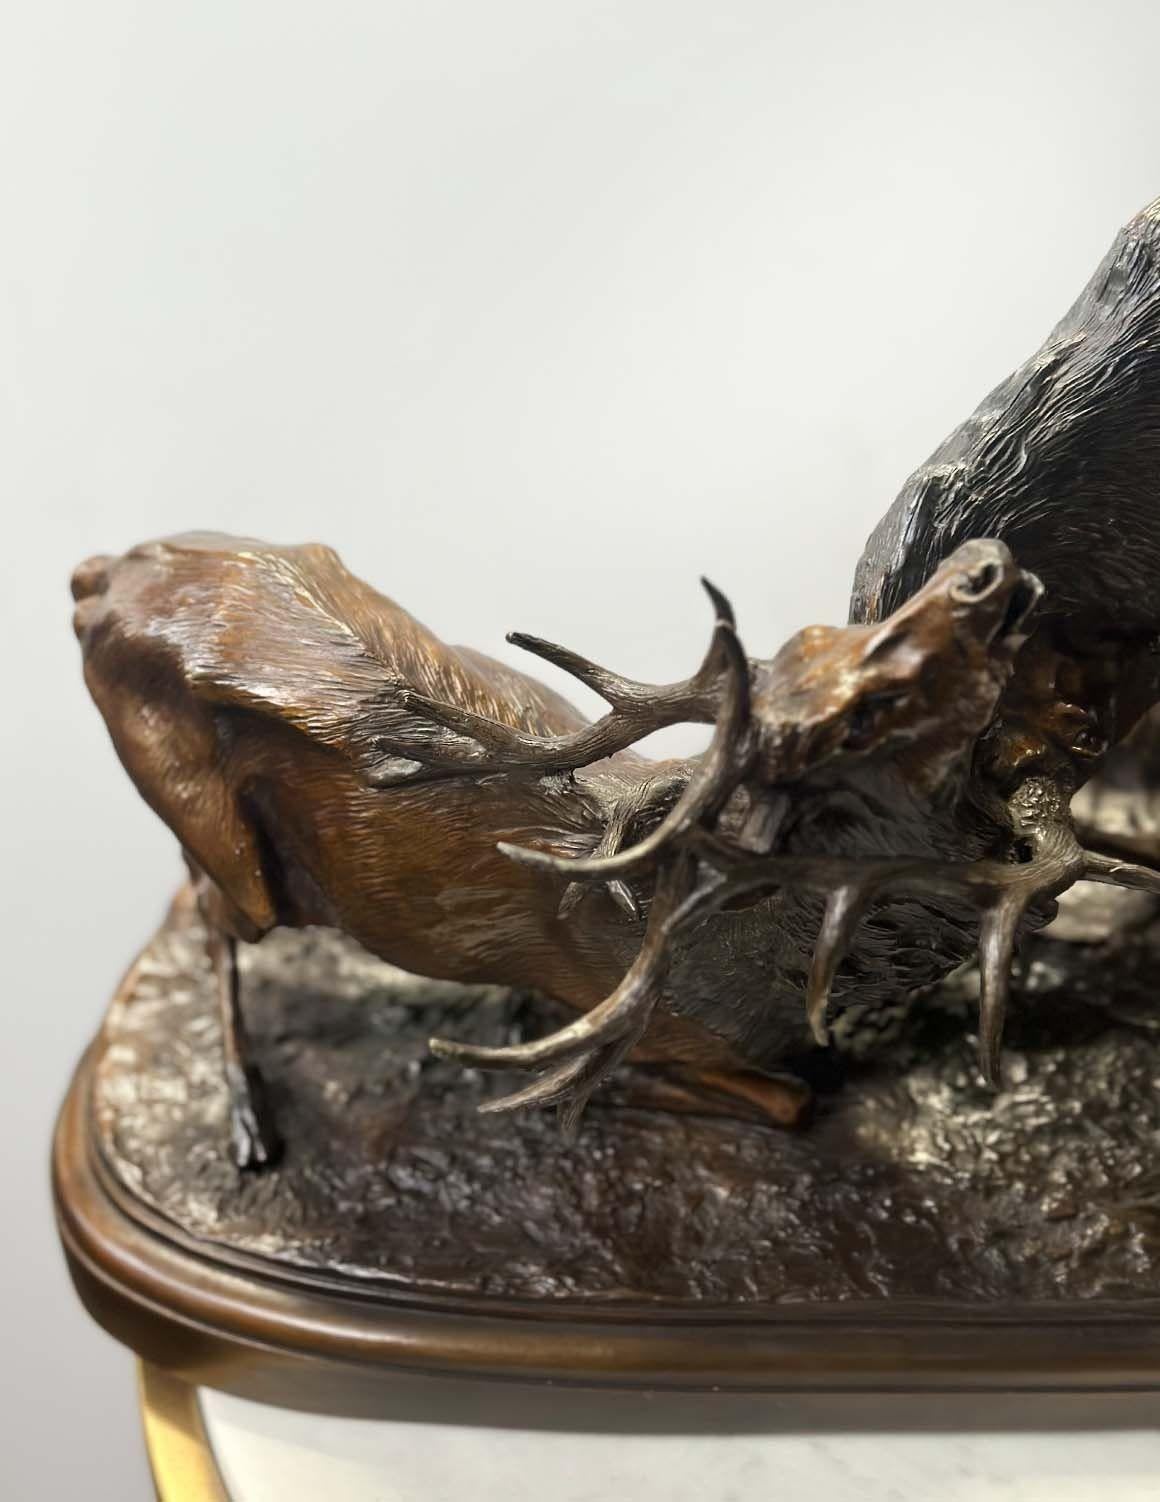 Cette sculpture en bronze de Pierre-Jules Mêne (Français, 1810-1879), datant de la fin du XIXe siècle, capture un moment fascinant du monde naturel, représentant deux élans majestueux engagés dans une bataille féroce et dynamique.
Le bronze porte la